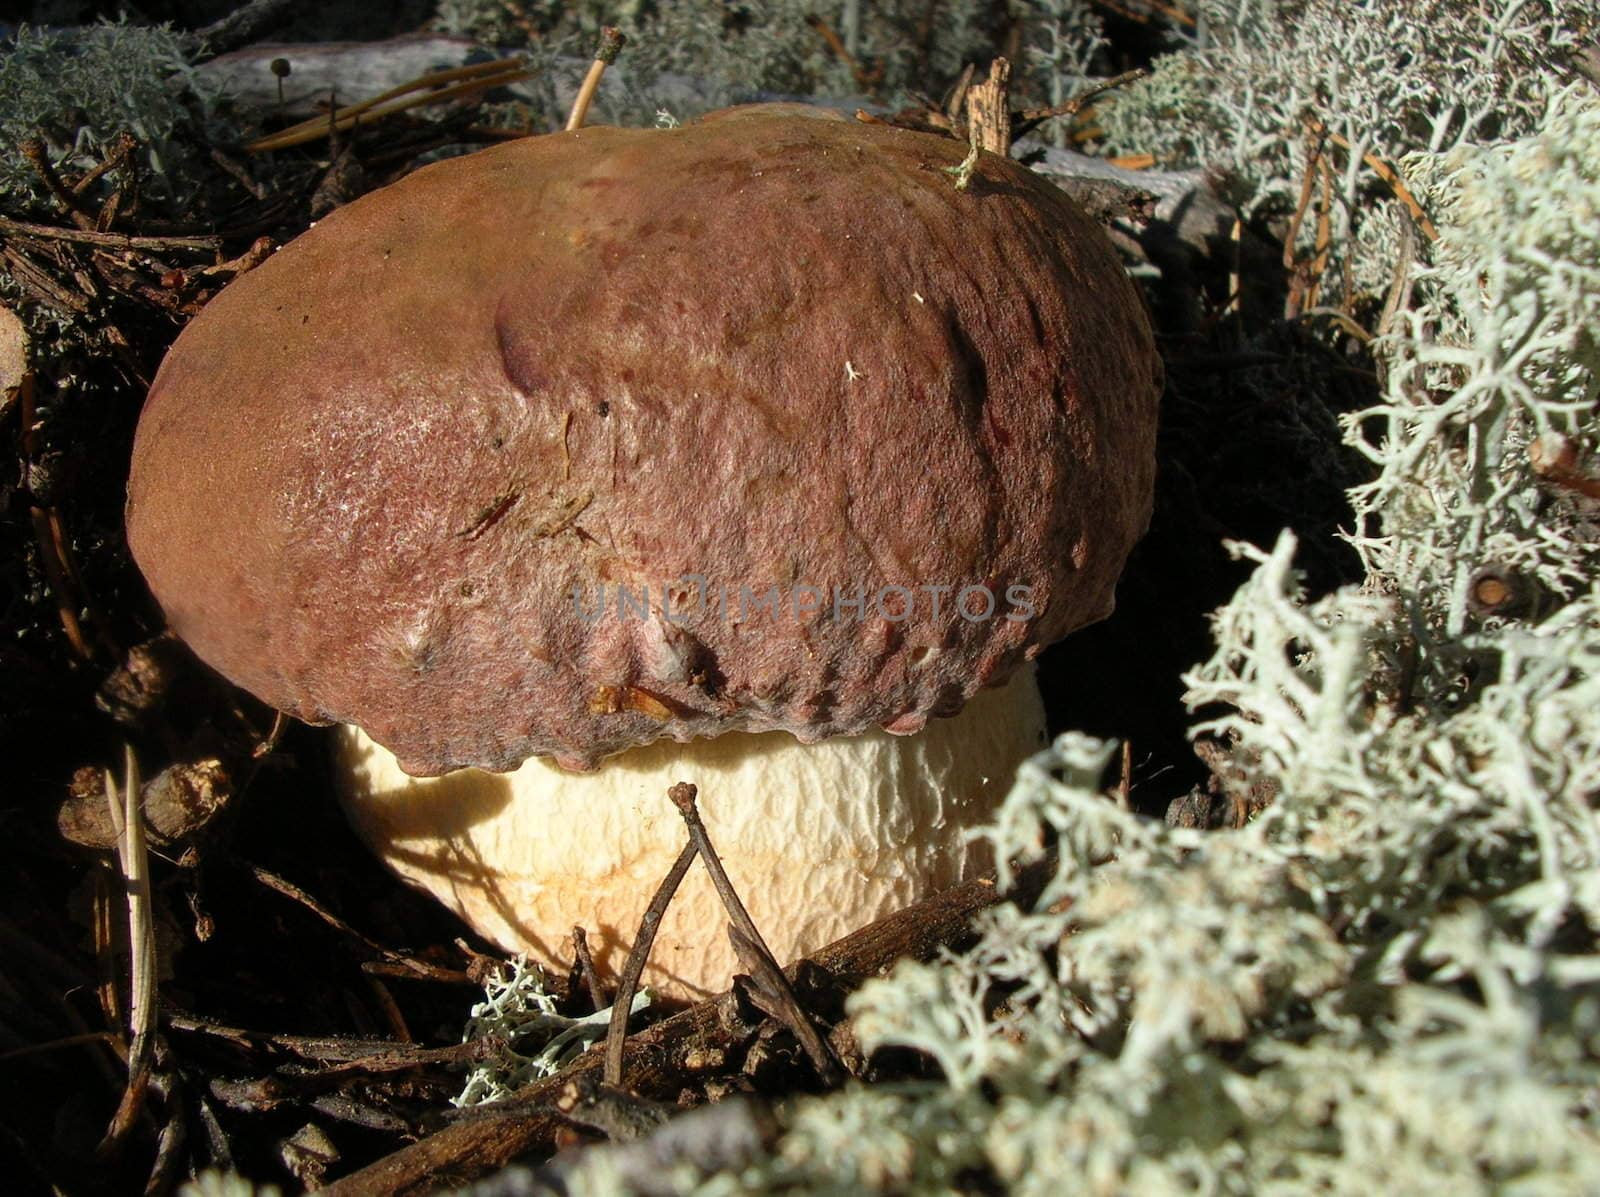 Whte mushroom in white moss